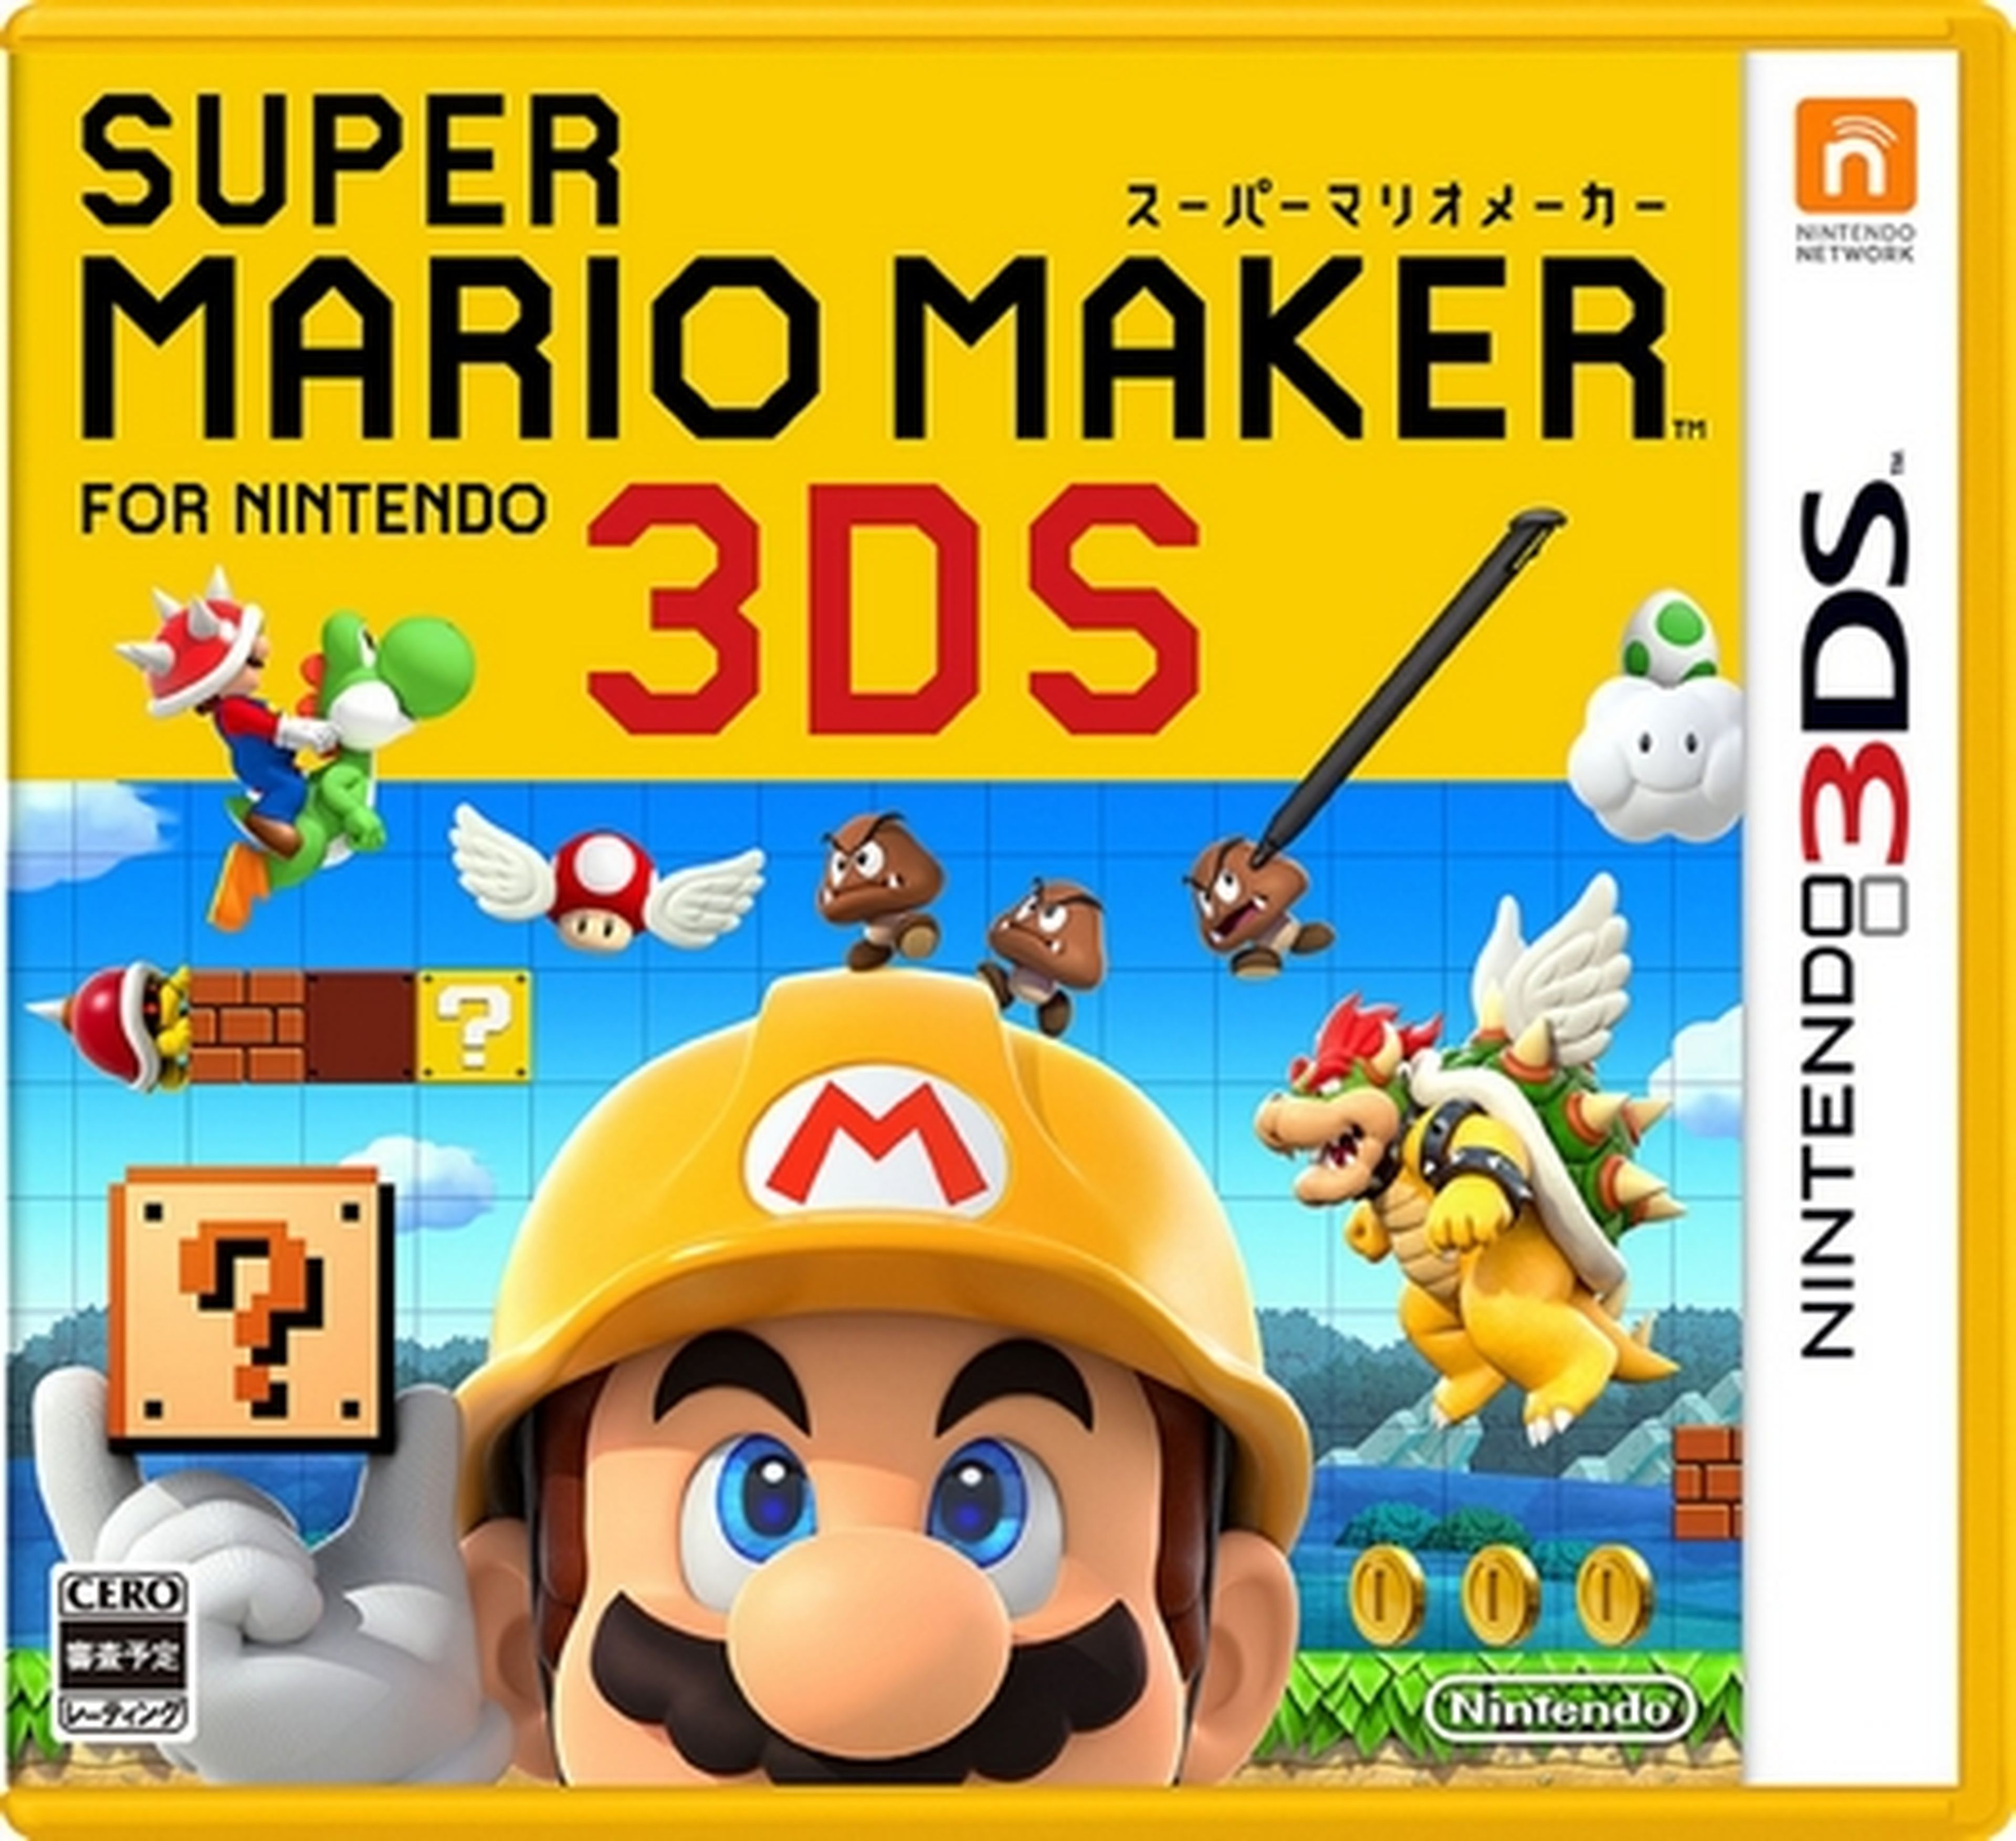 Super Mario Maker portátil llega a Nintendo 3DS